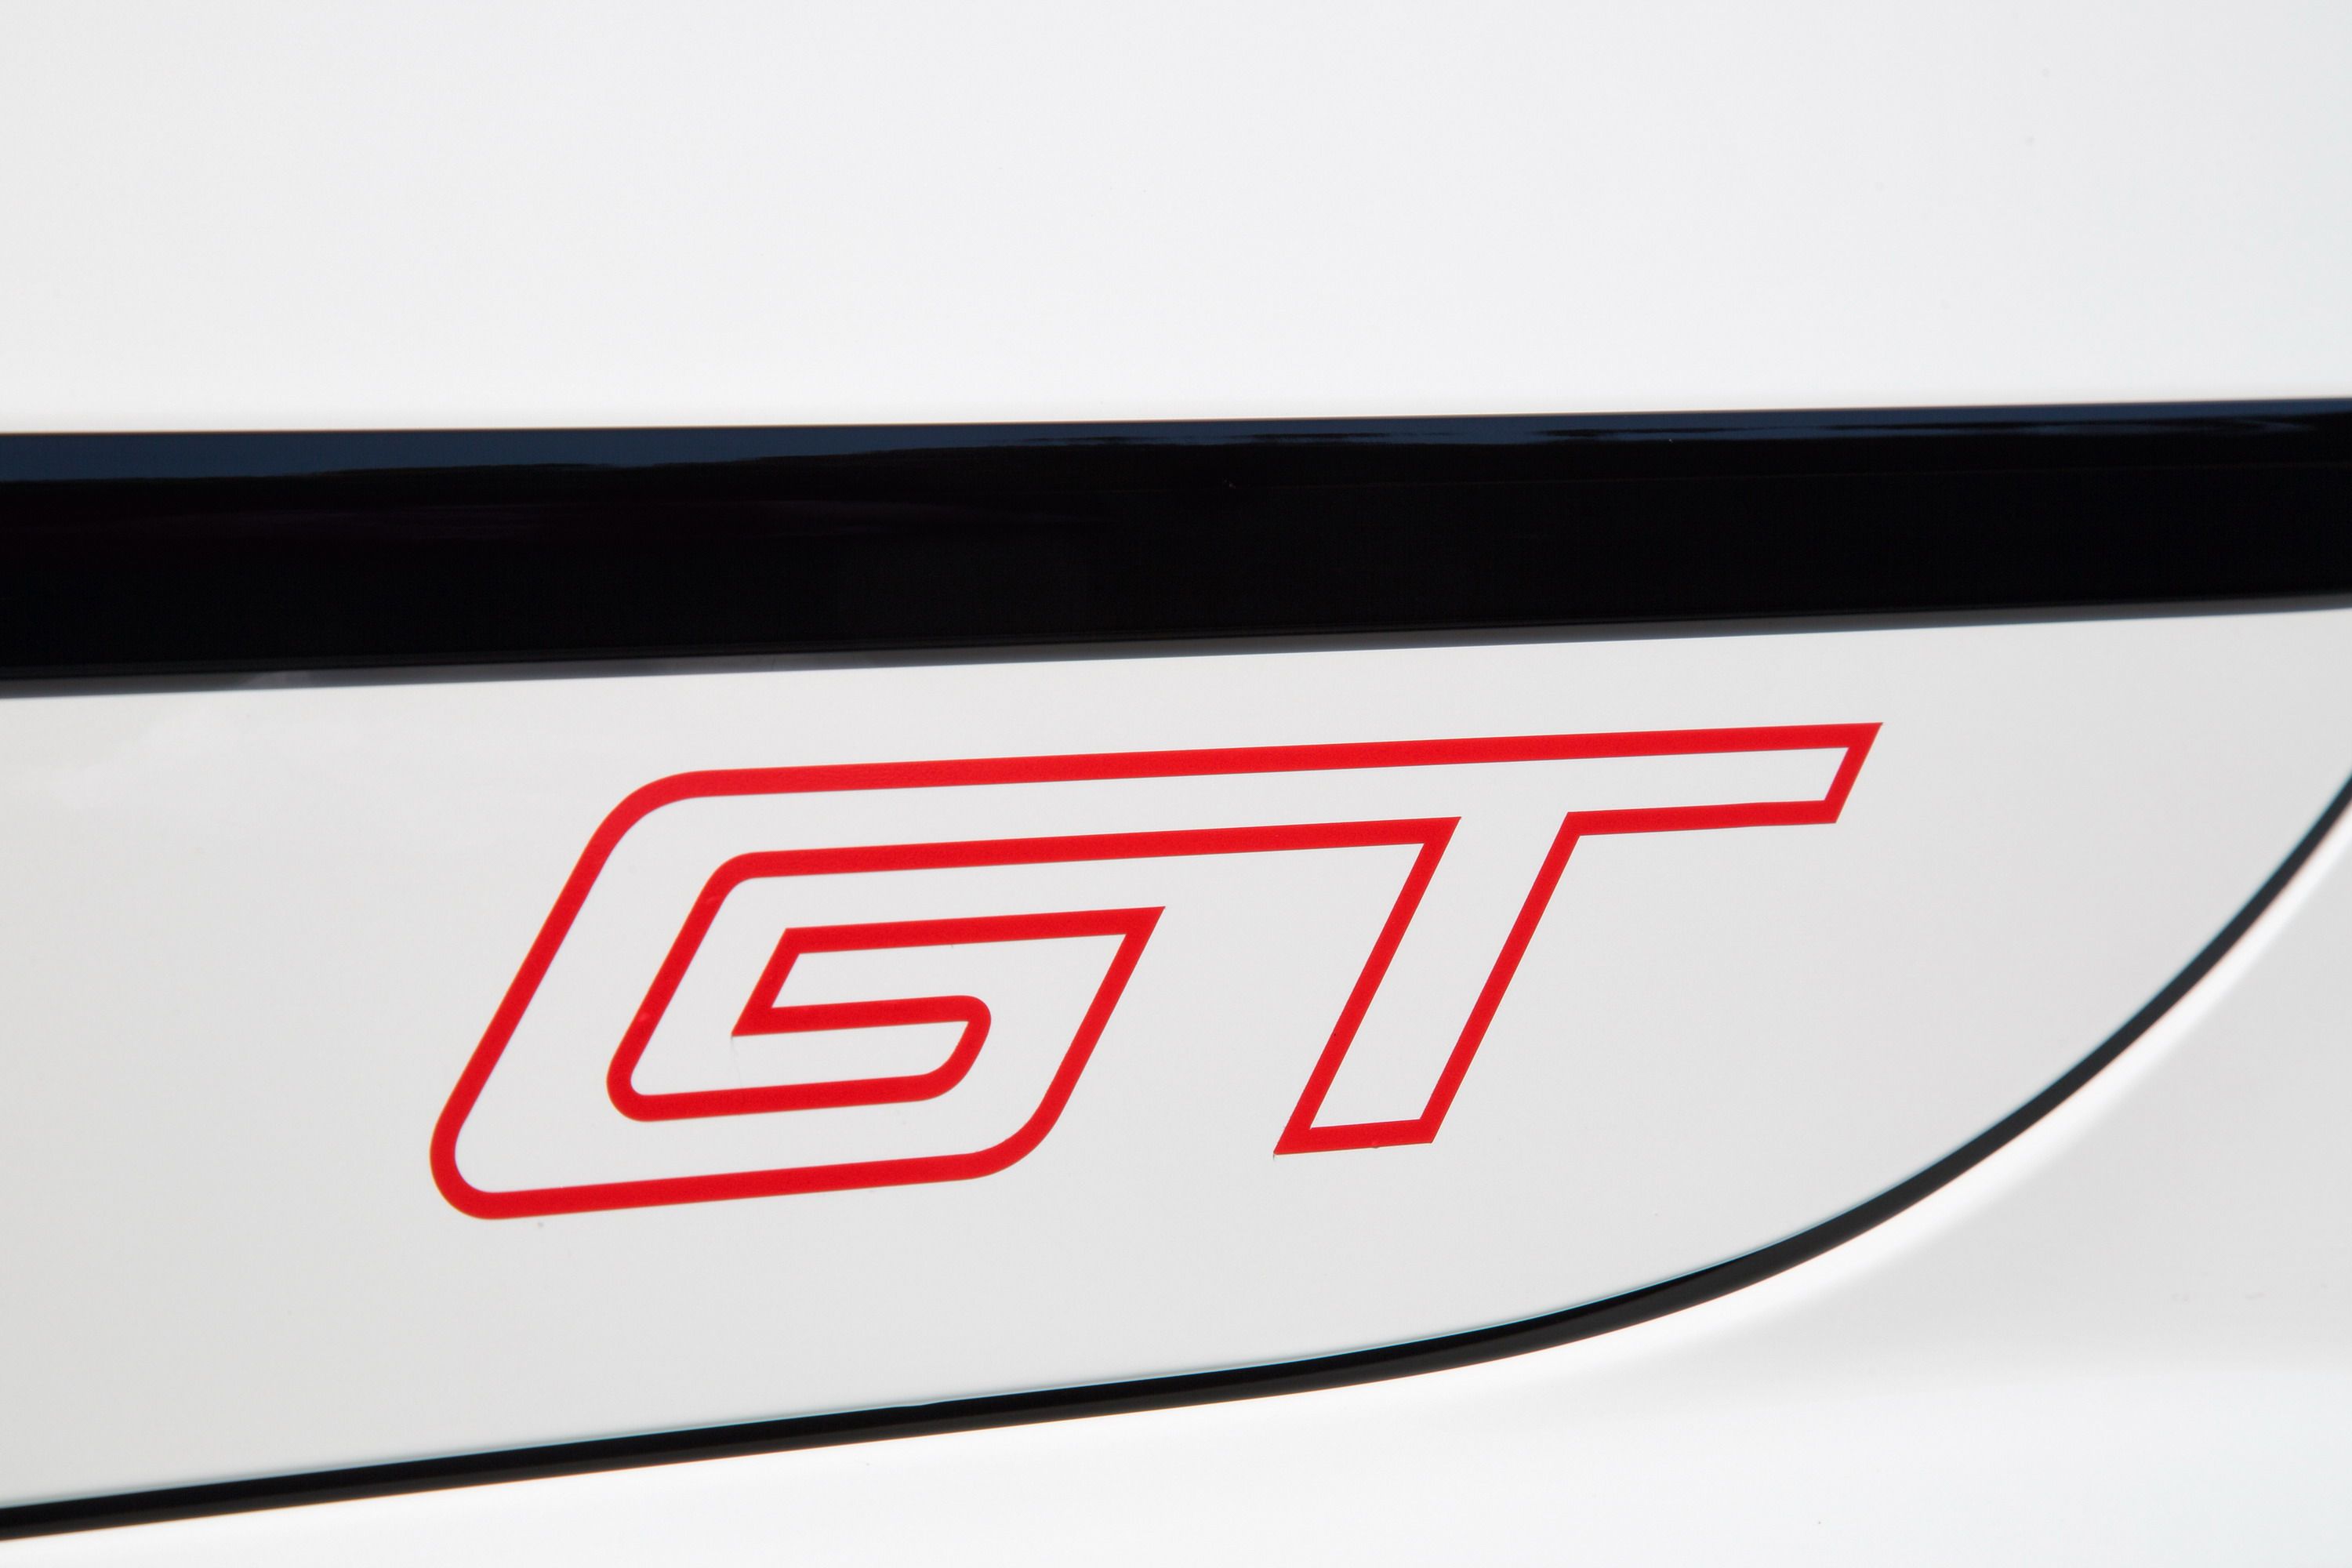 2016 Volkswagen Passat GT Concept